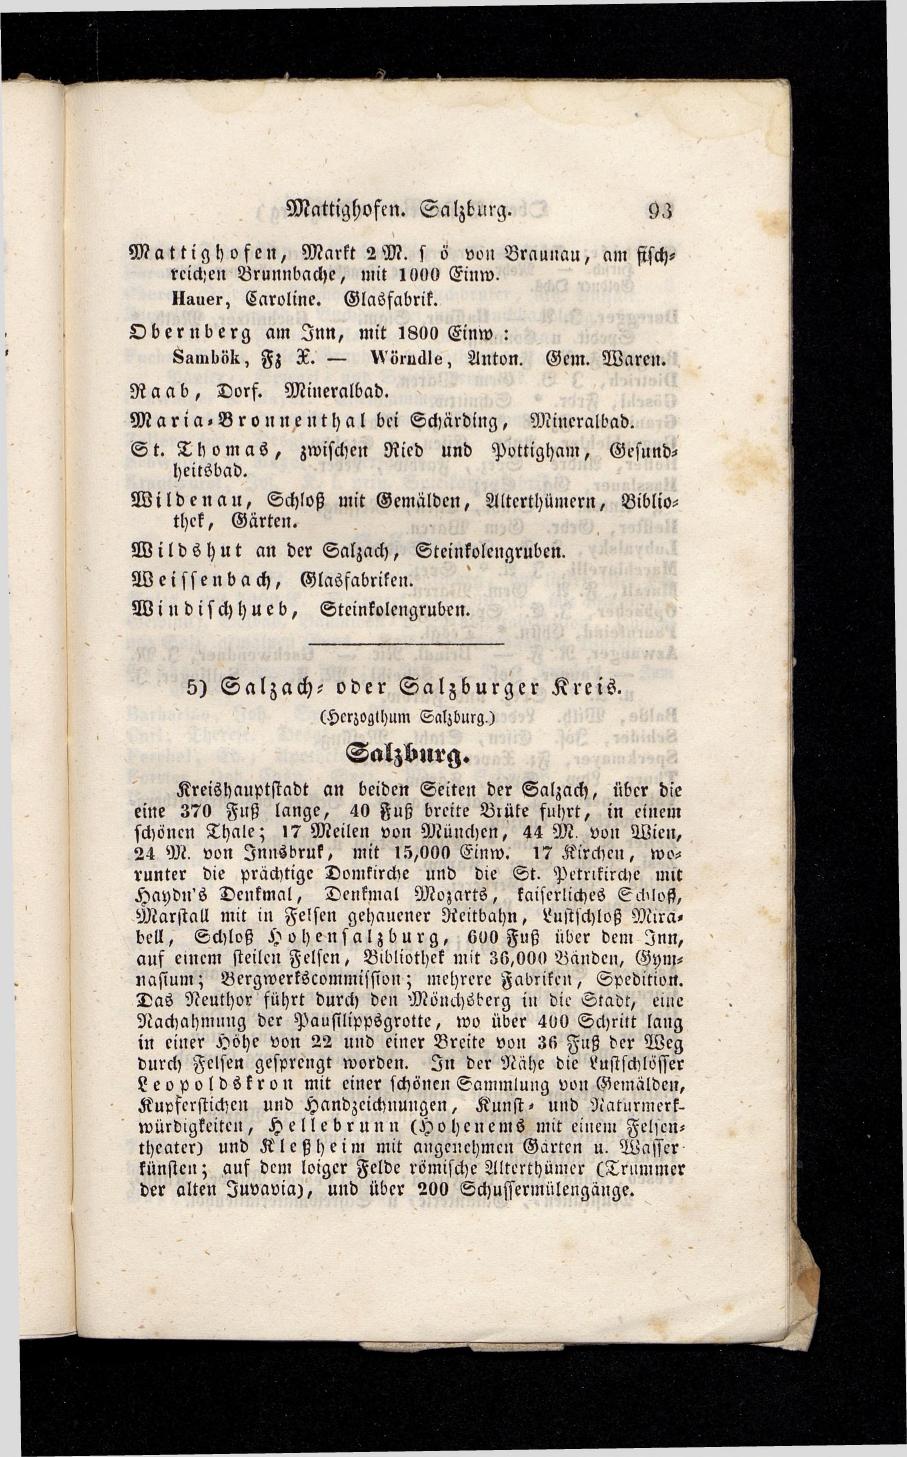 Grosses Adressbuch der Kaufleute. No. 13. Oesterreich ober u. unter der Enns 1844 - Seite 97